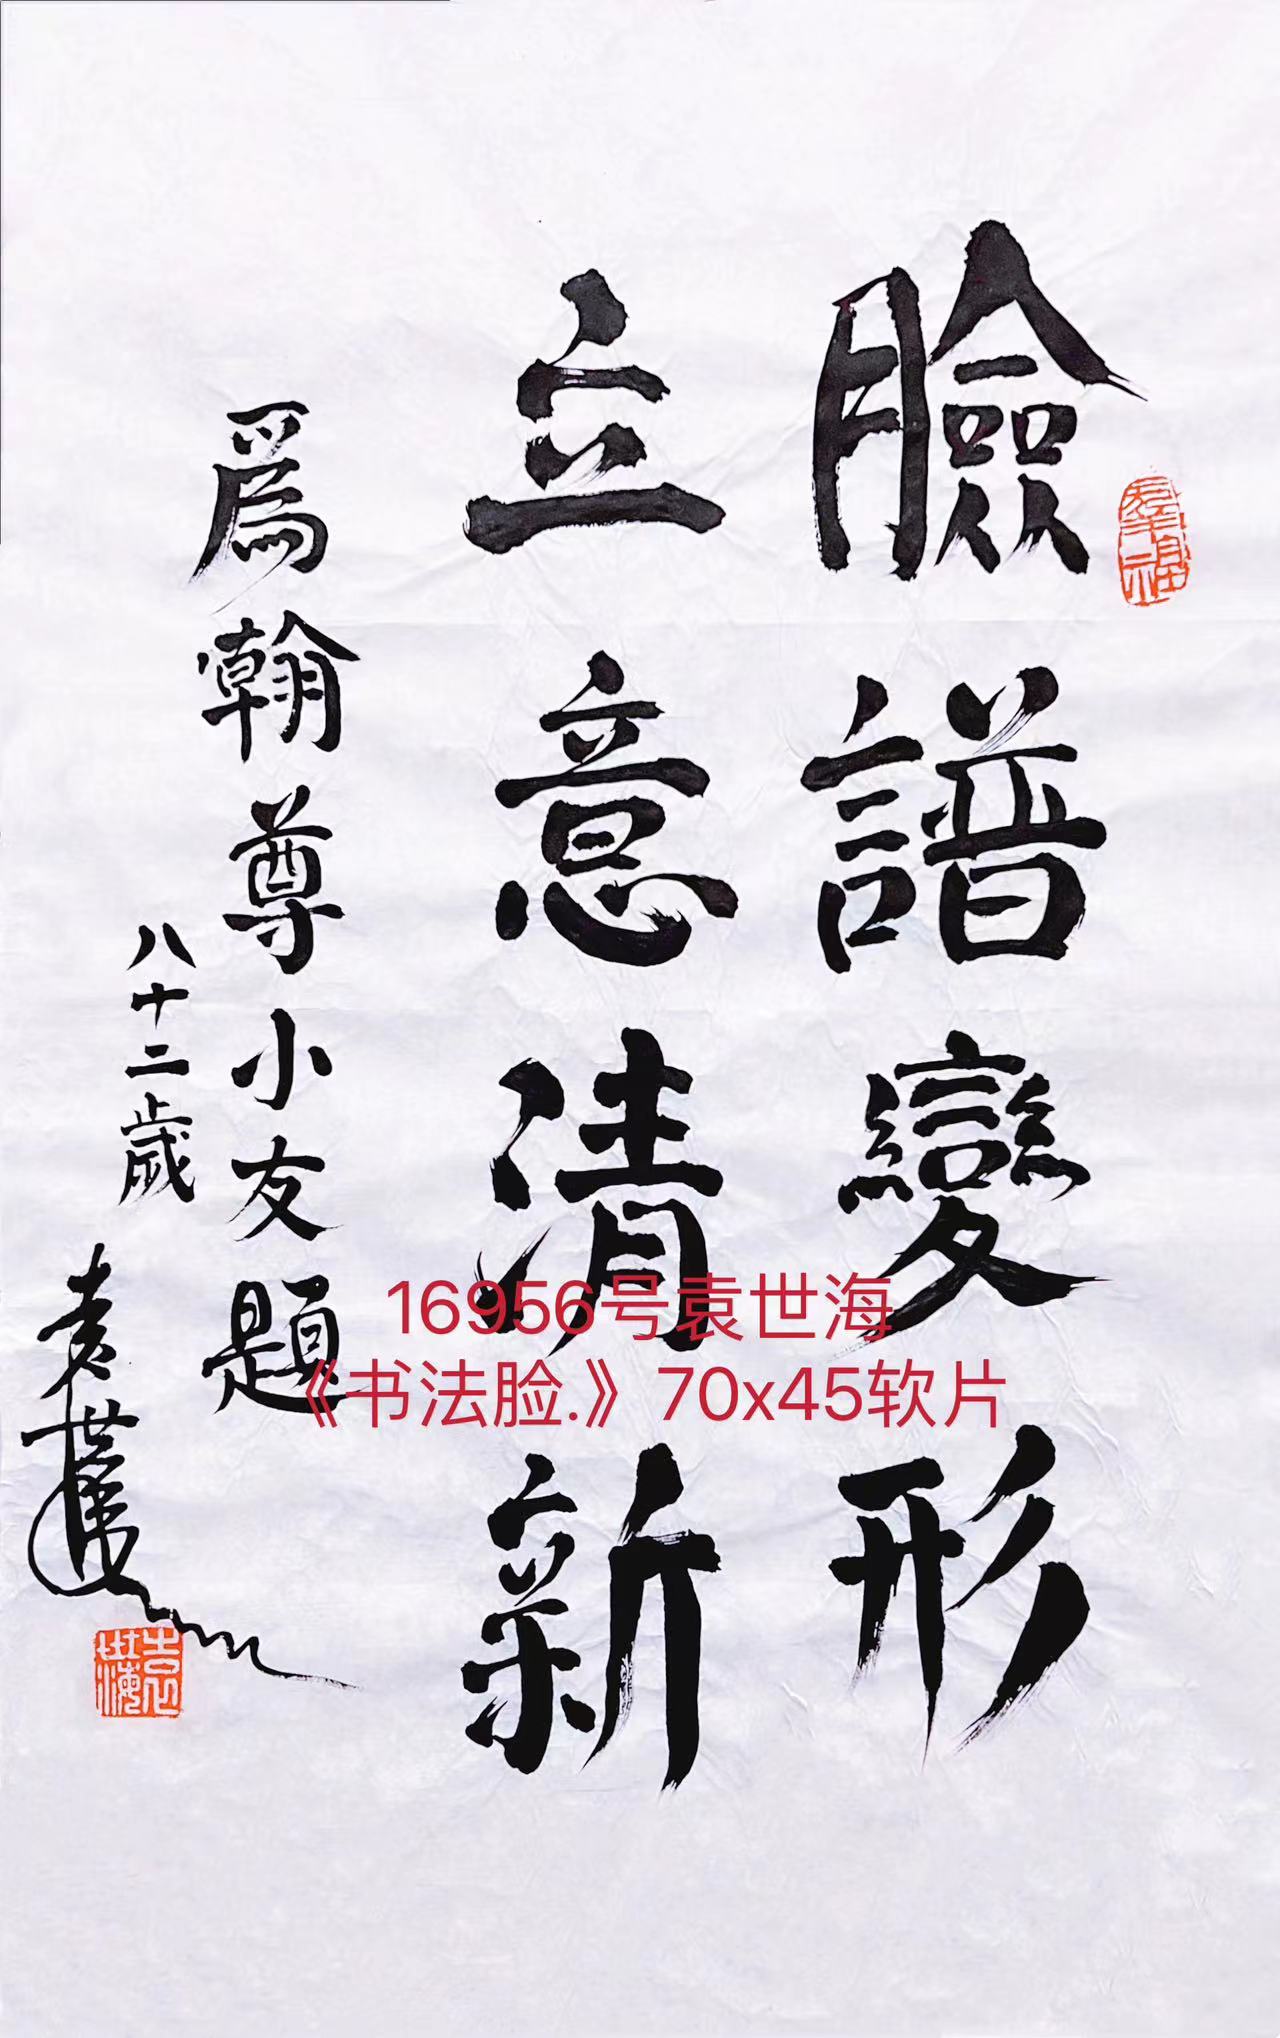 16956号袁世海《书法脸.》70x45软片【】.jpg